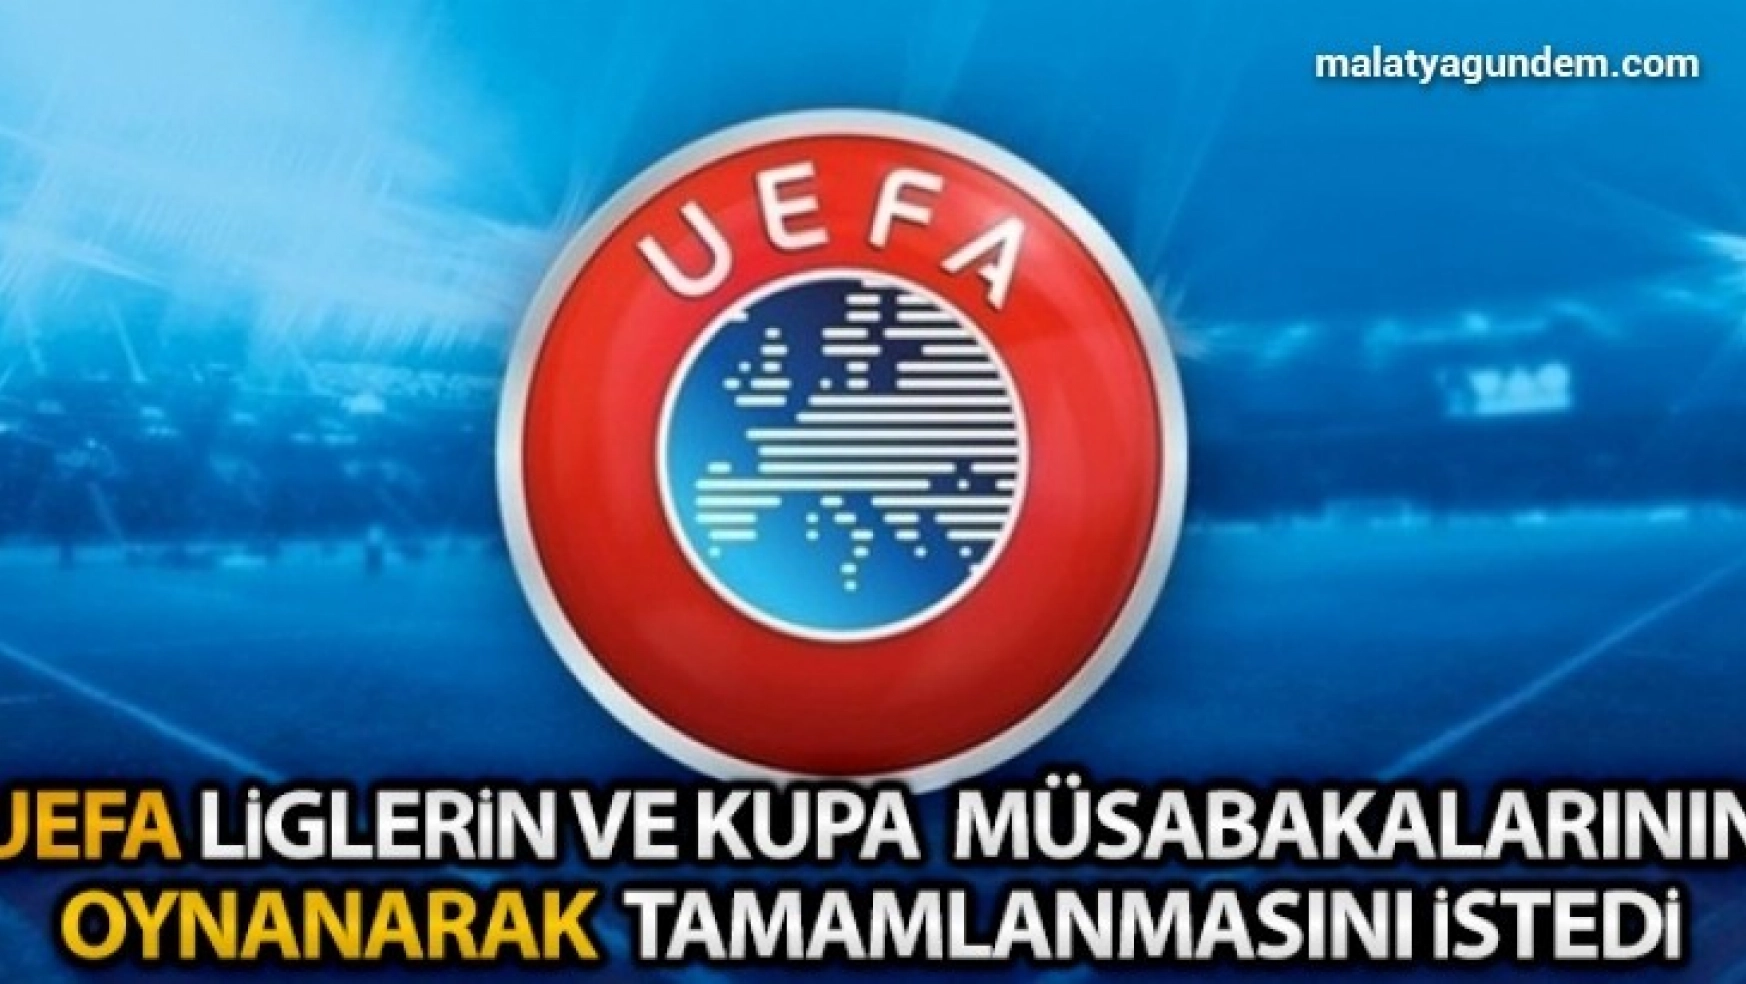 UEFA müsabakalarının oynanarak tamamlanmasını istedi